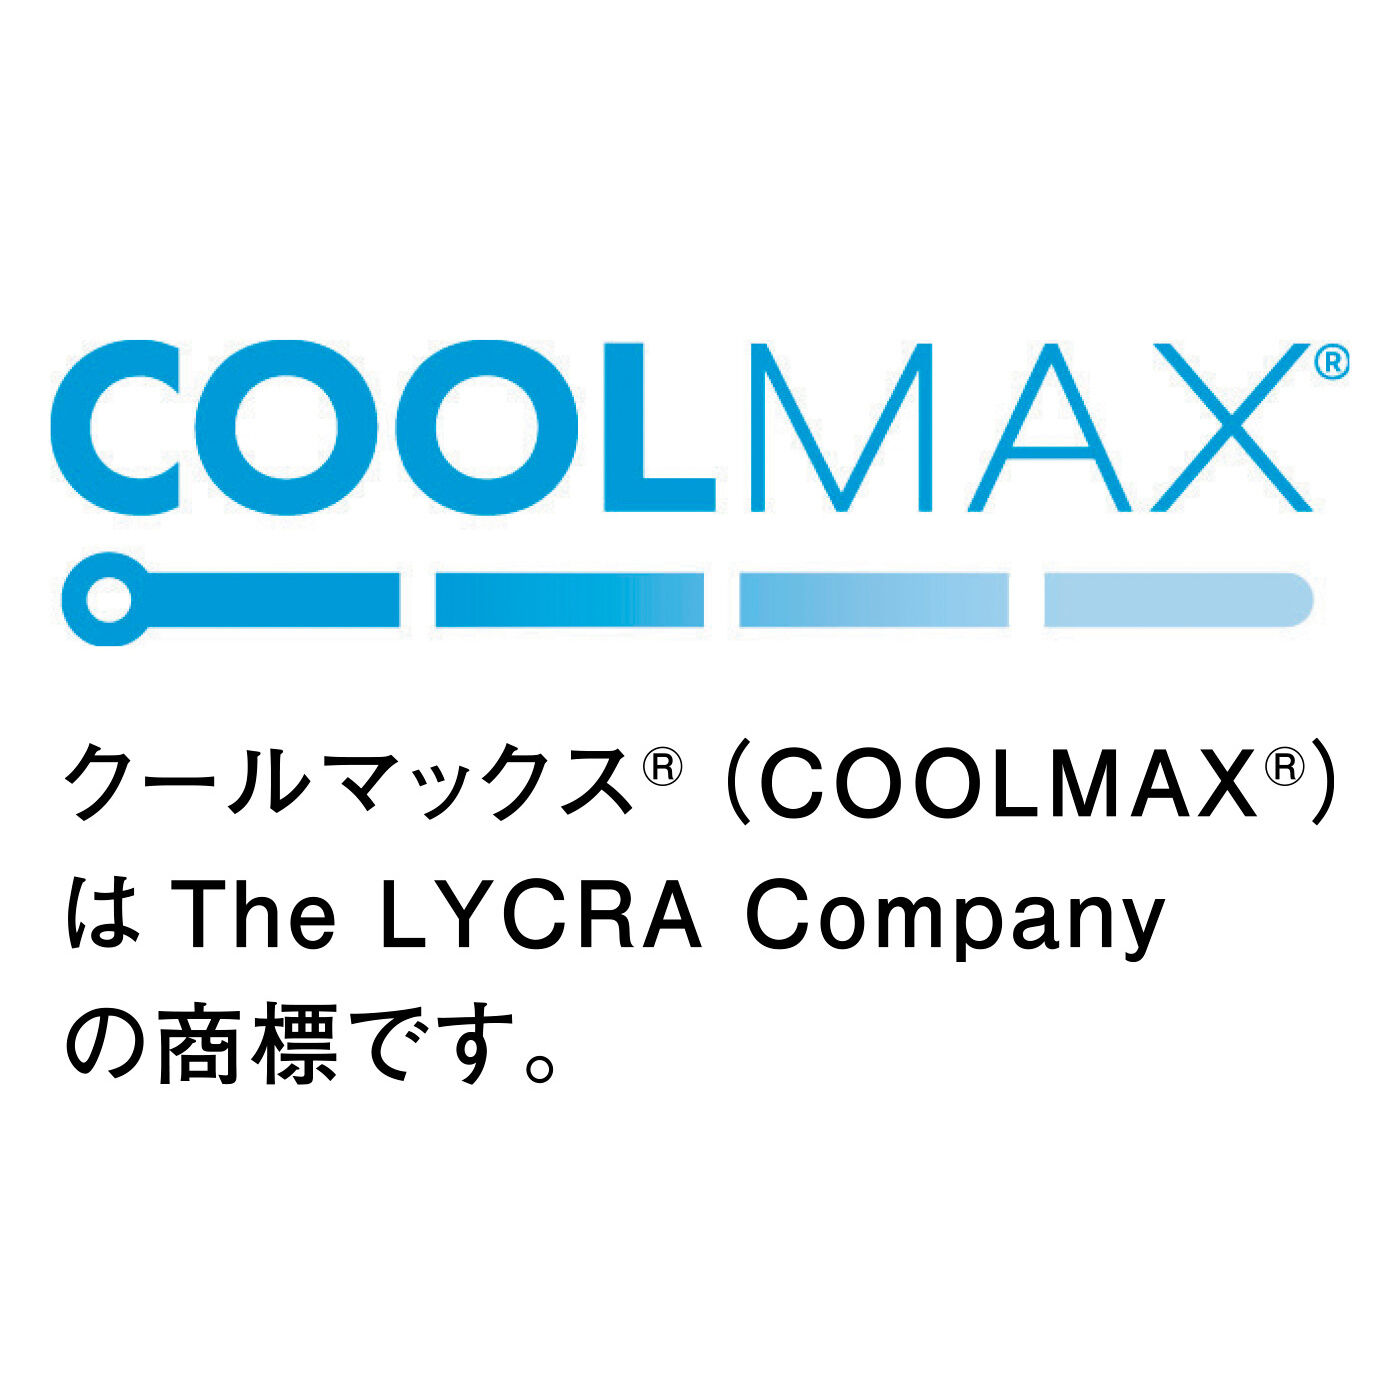 flufeel|さらさら続いて ワンピーススタイル快適ロングインナーの会|クールマックス（R）（COOLMAX（R））はThe LYCRA Companyの商標です。[[BR]]